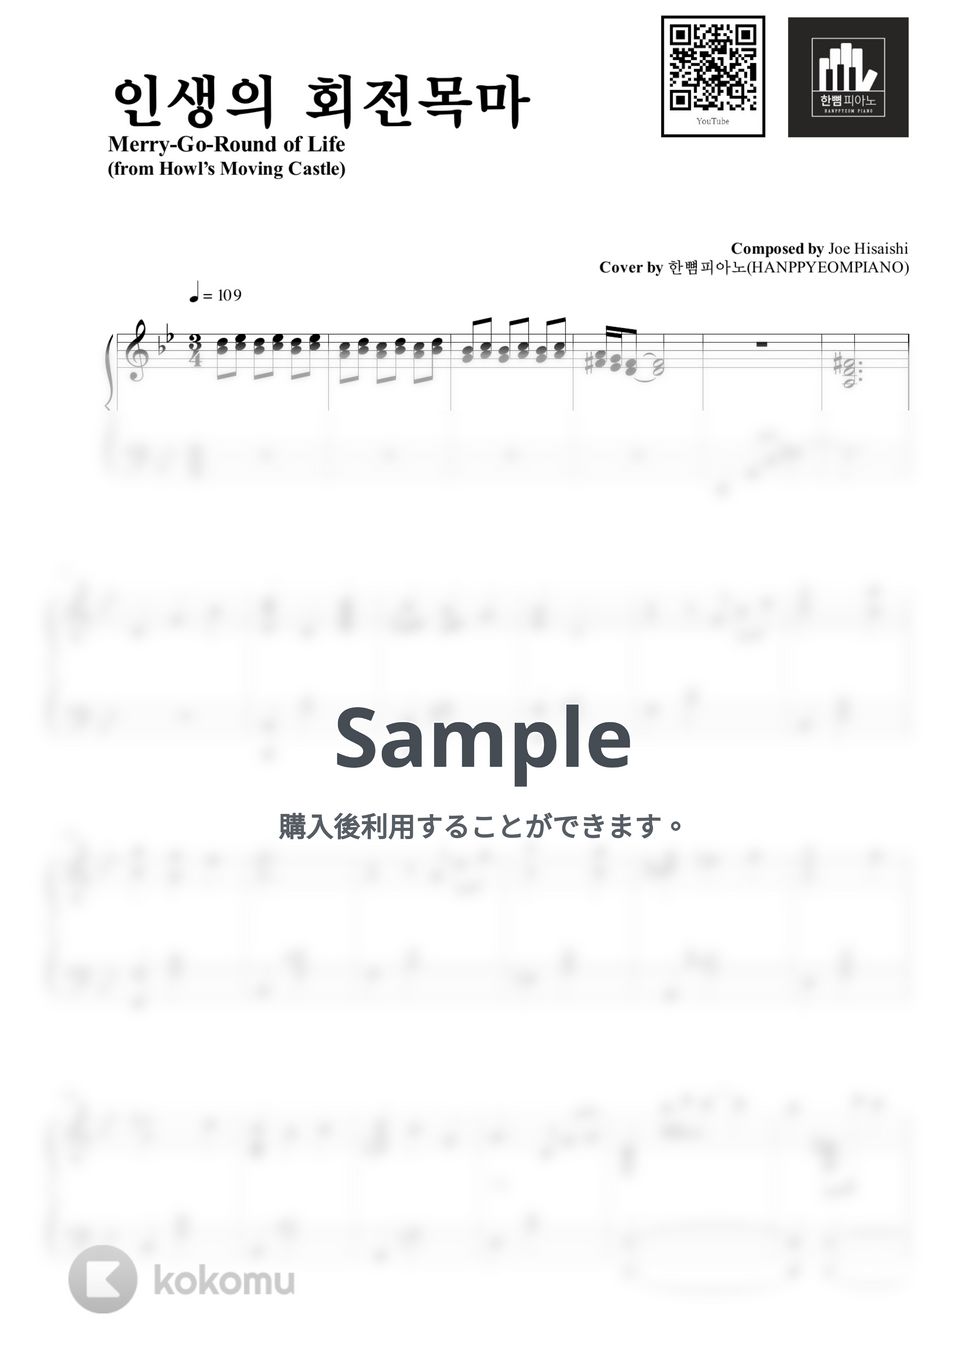 久石譲 - 人生メリーゴーランド (PIANO COVER) by HANPPYEOMPIANO